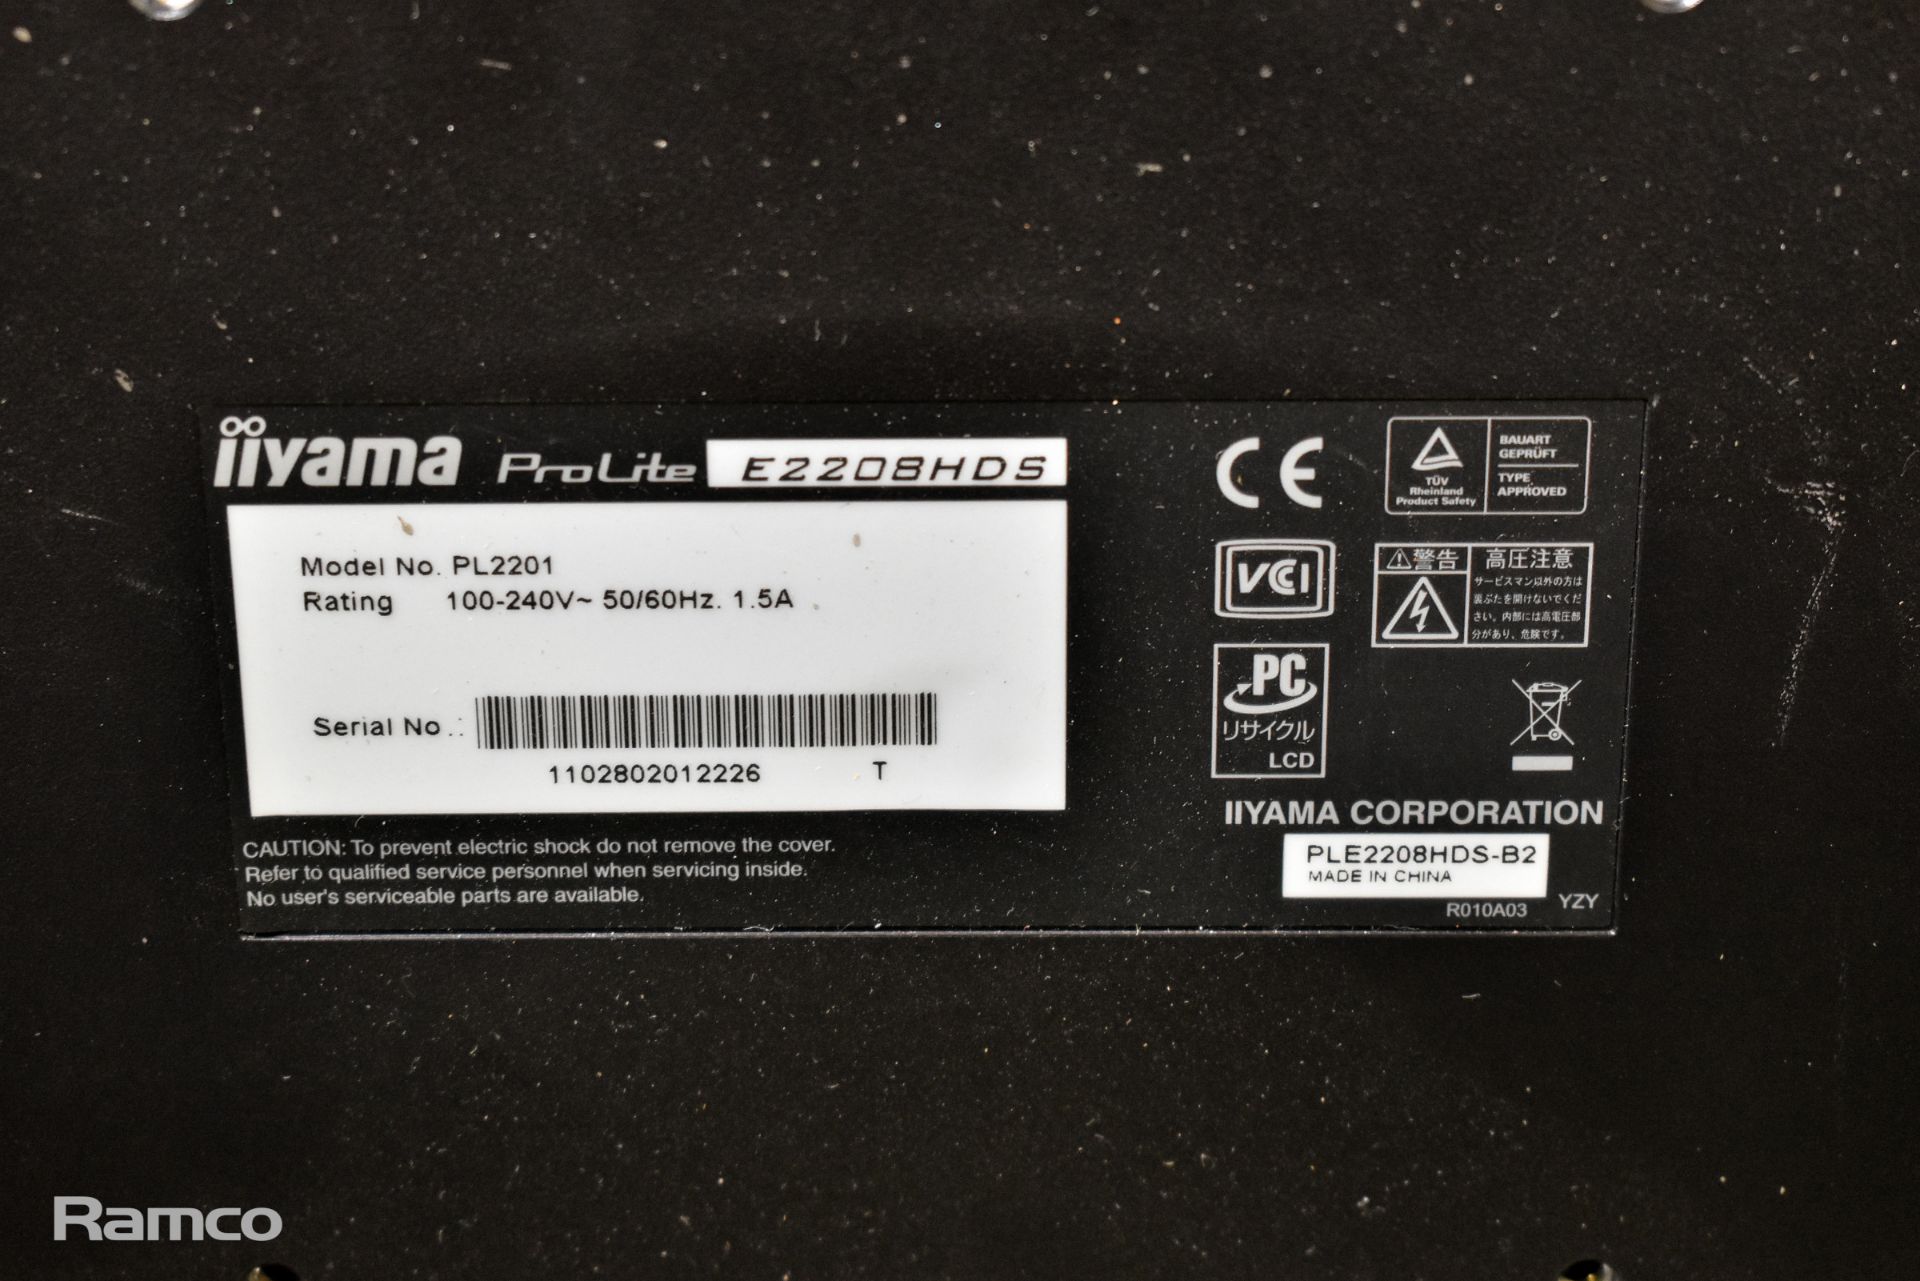 Iiyama Prolite E2208HDS 22 inch monitor - Image 3 of 3